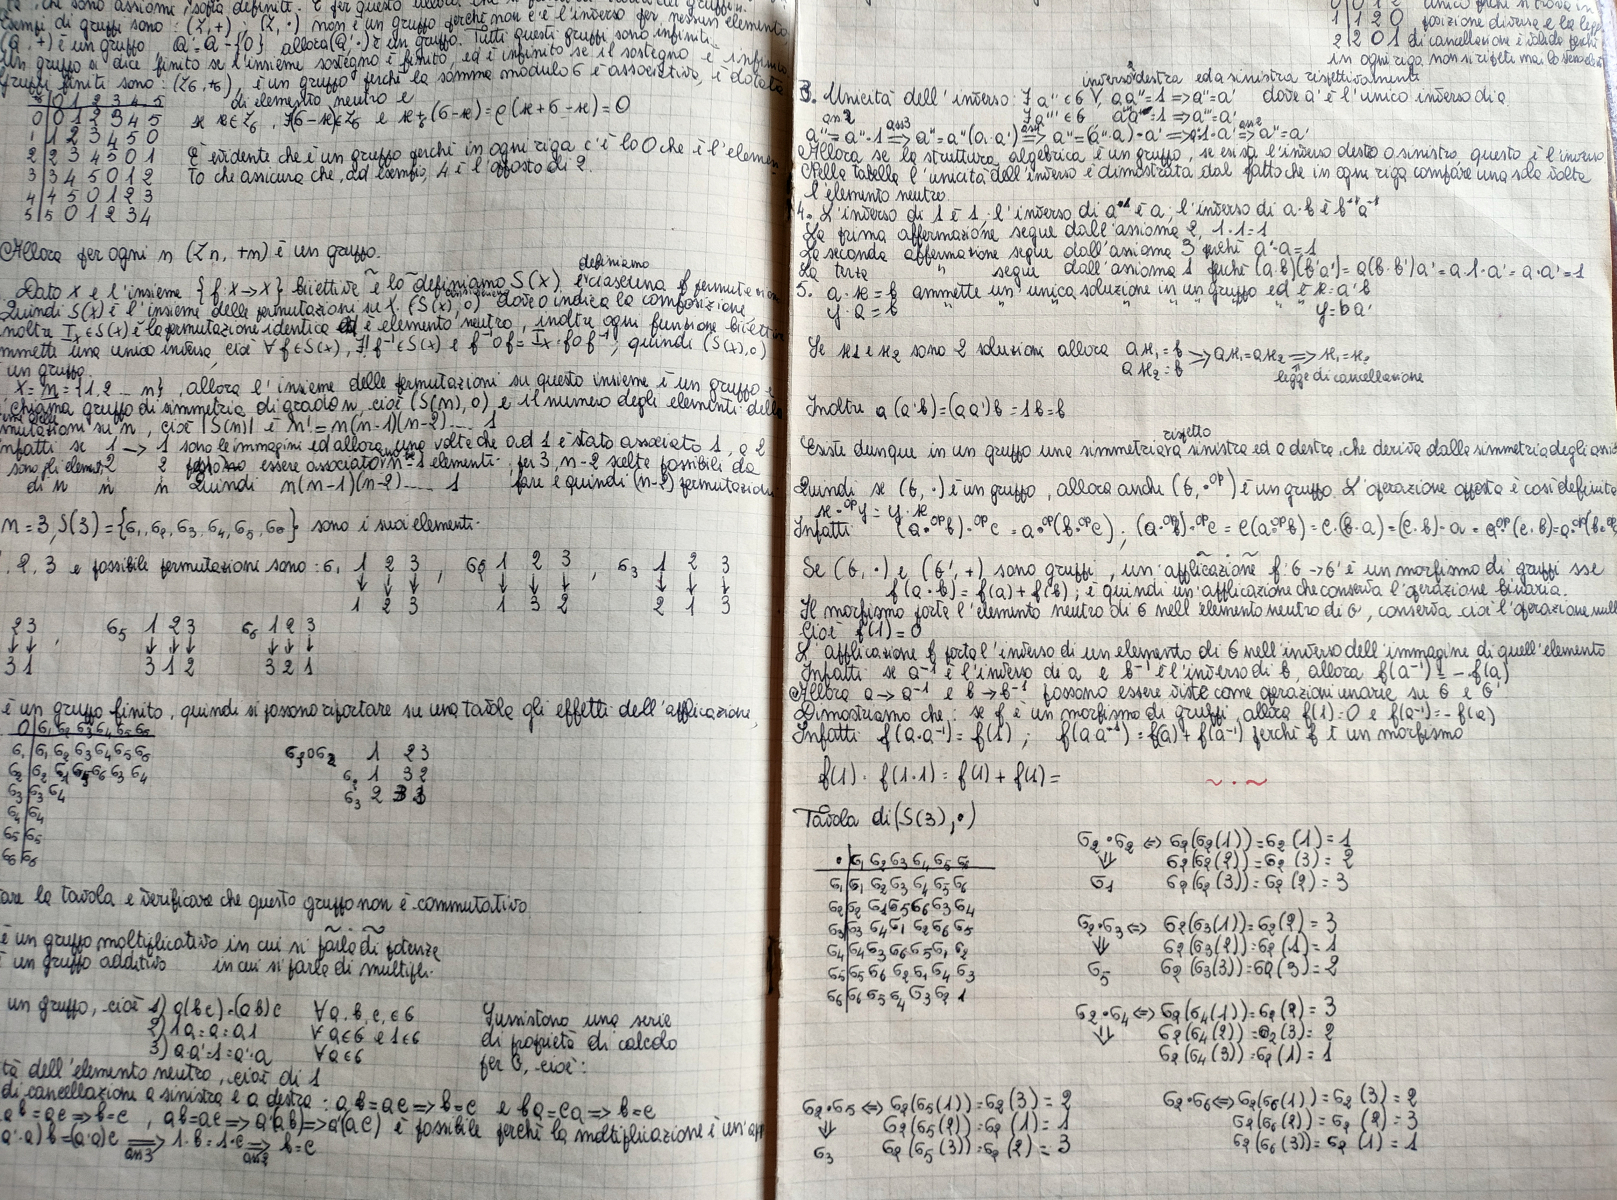 Appunti del corso di  algebra del 1979-1980 (Tina Magnotti)